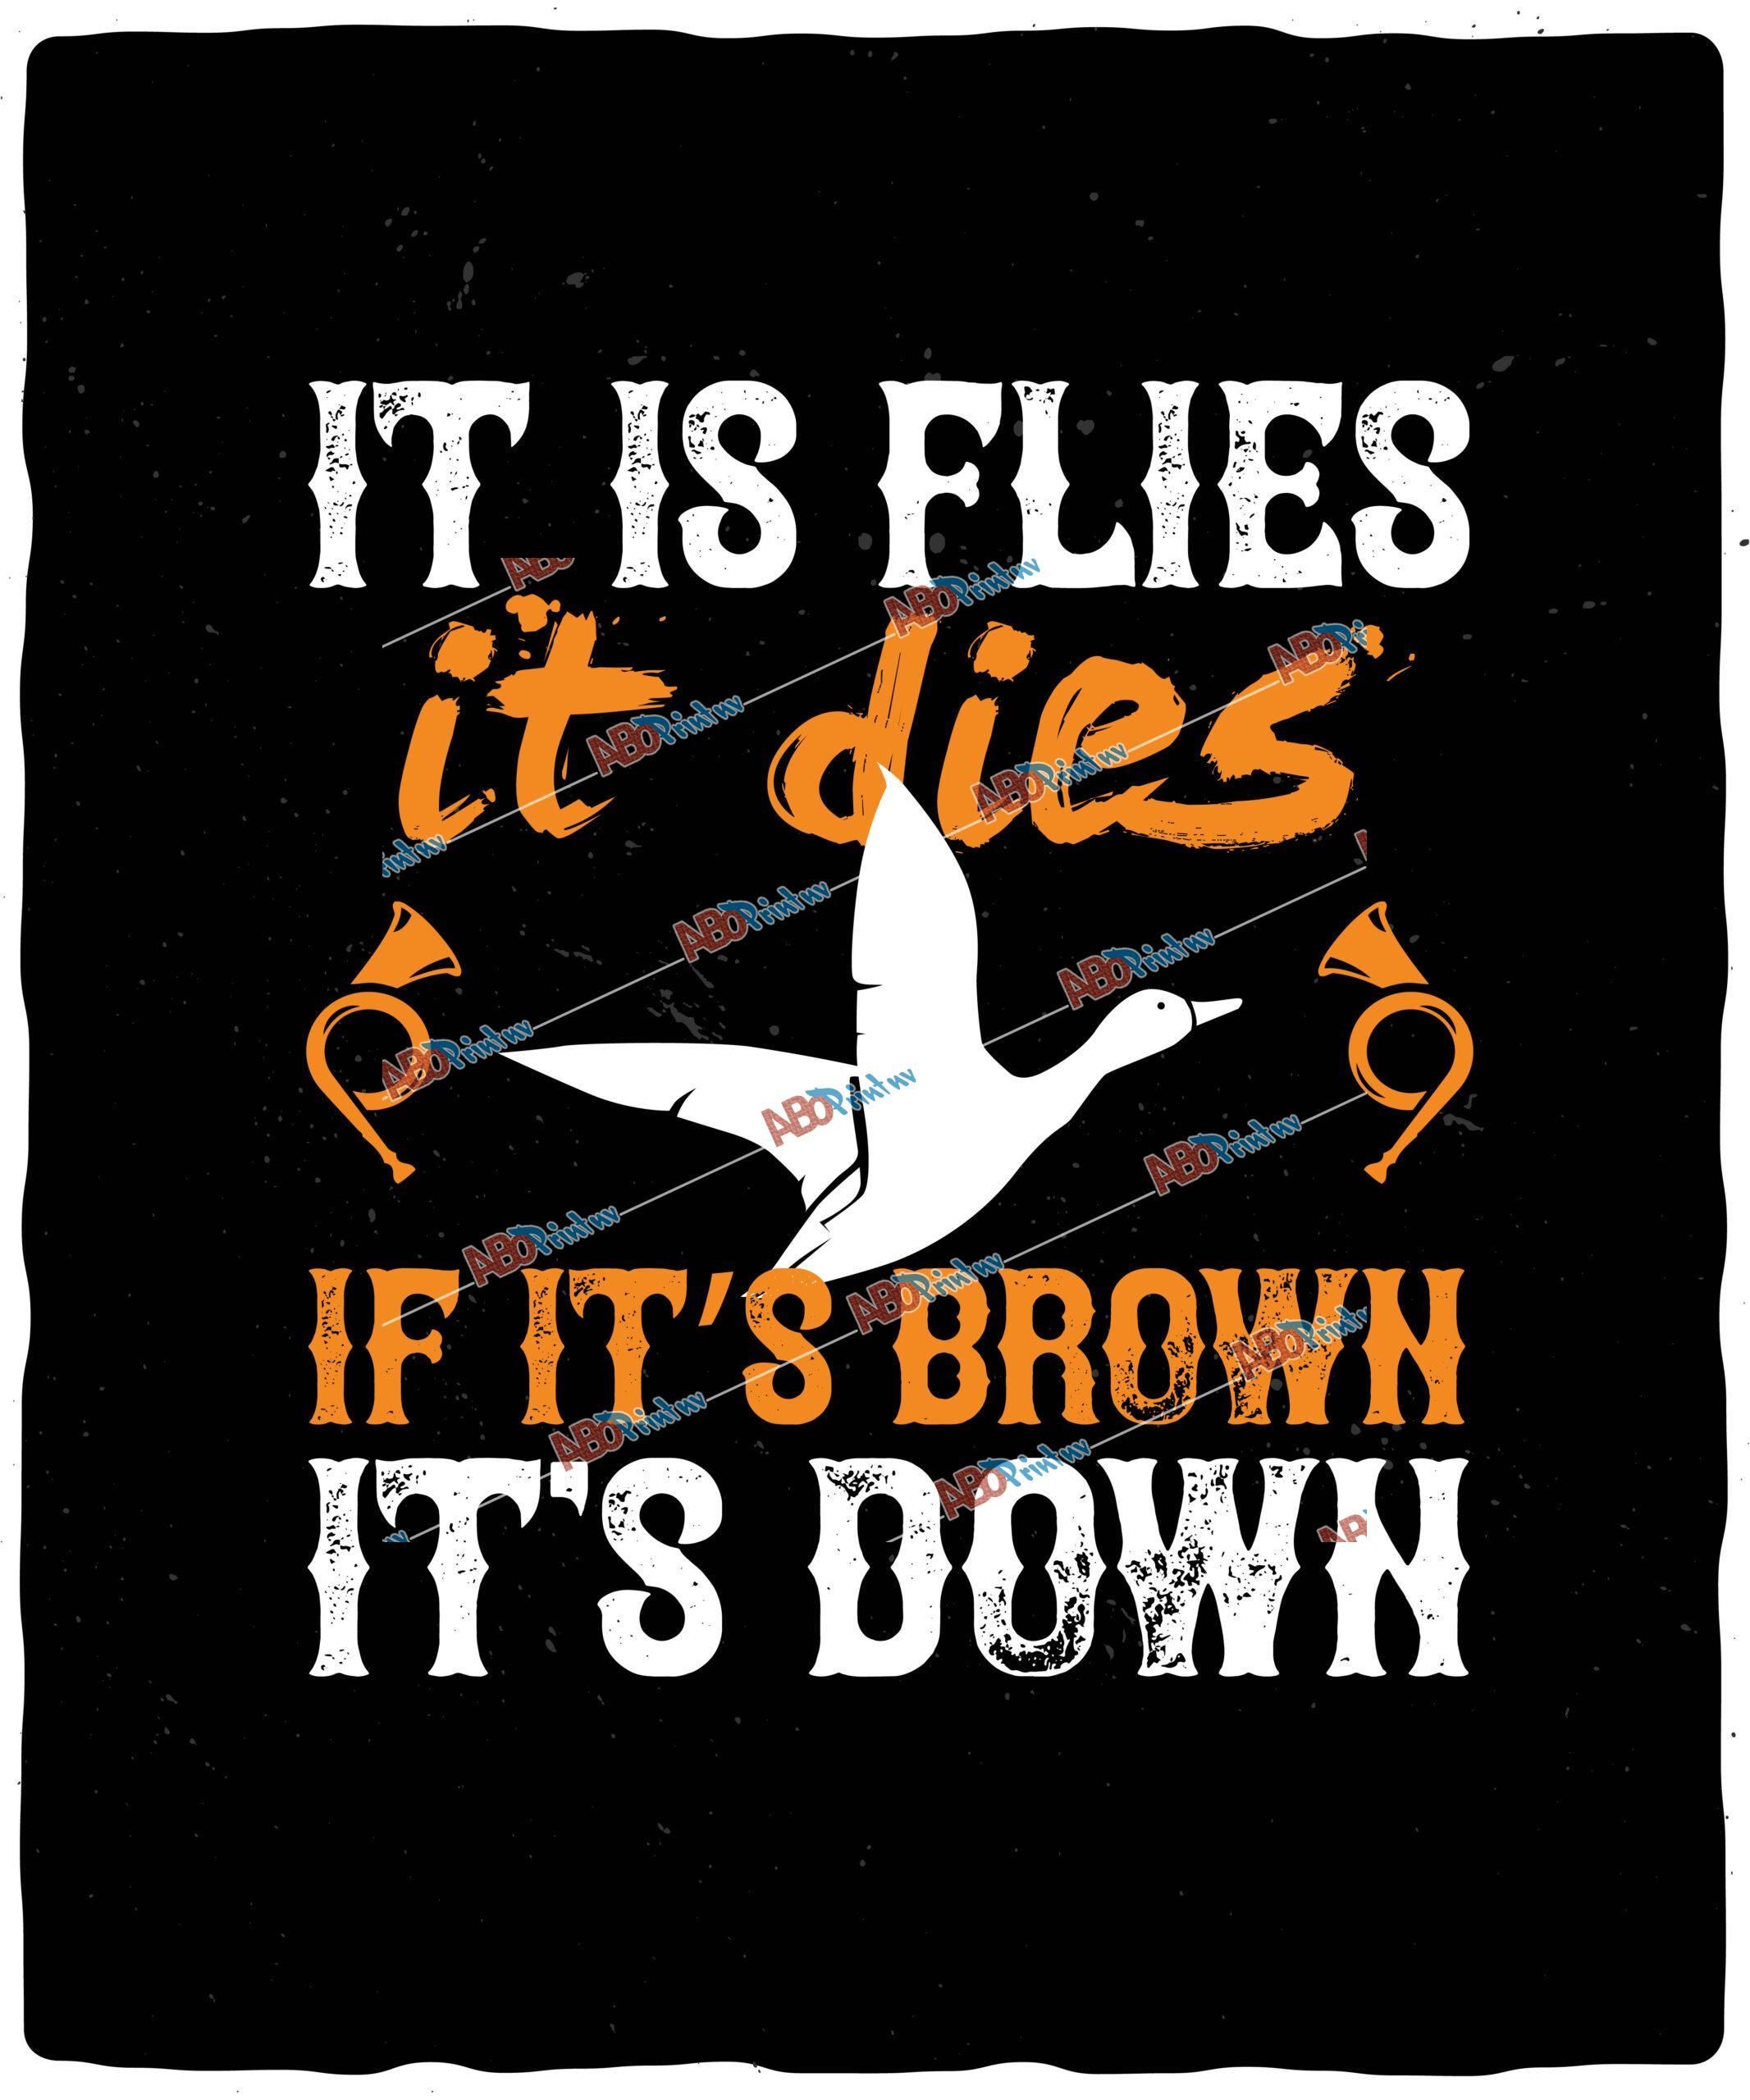 It is flies it dies if it’s brown it’s down